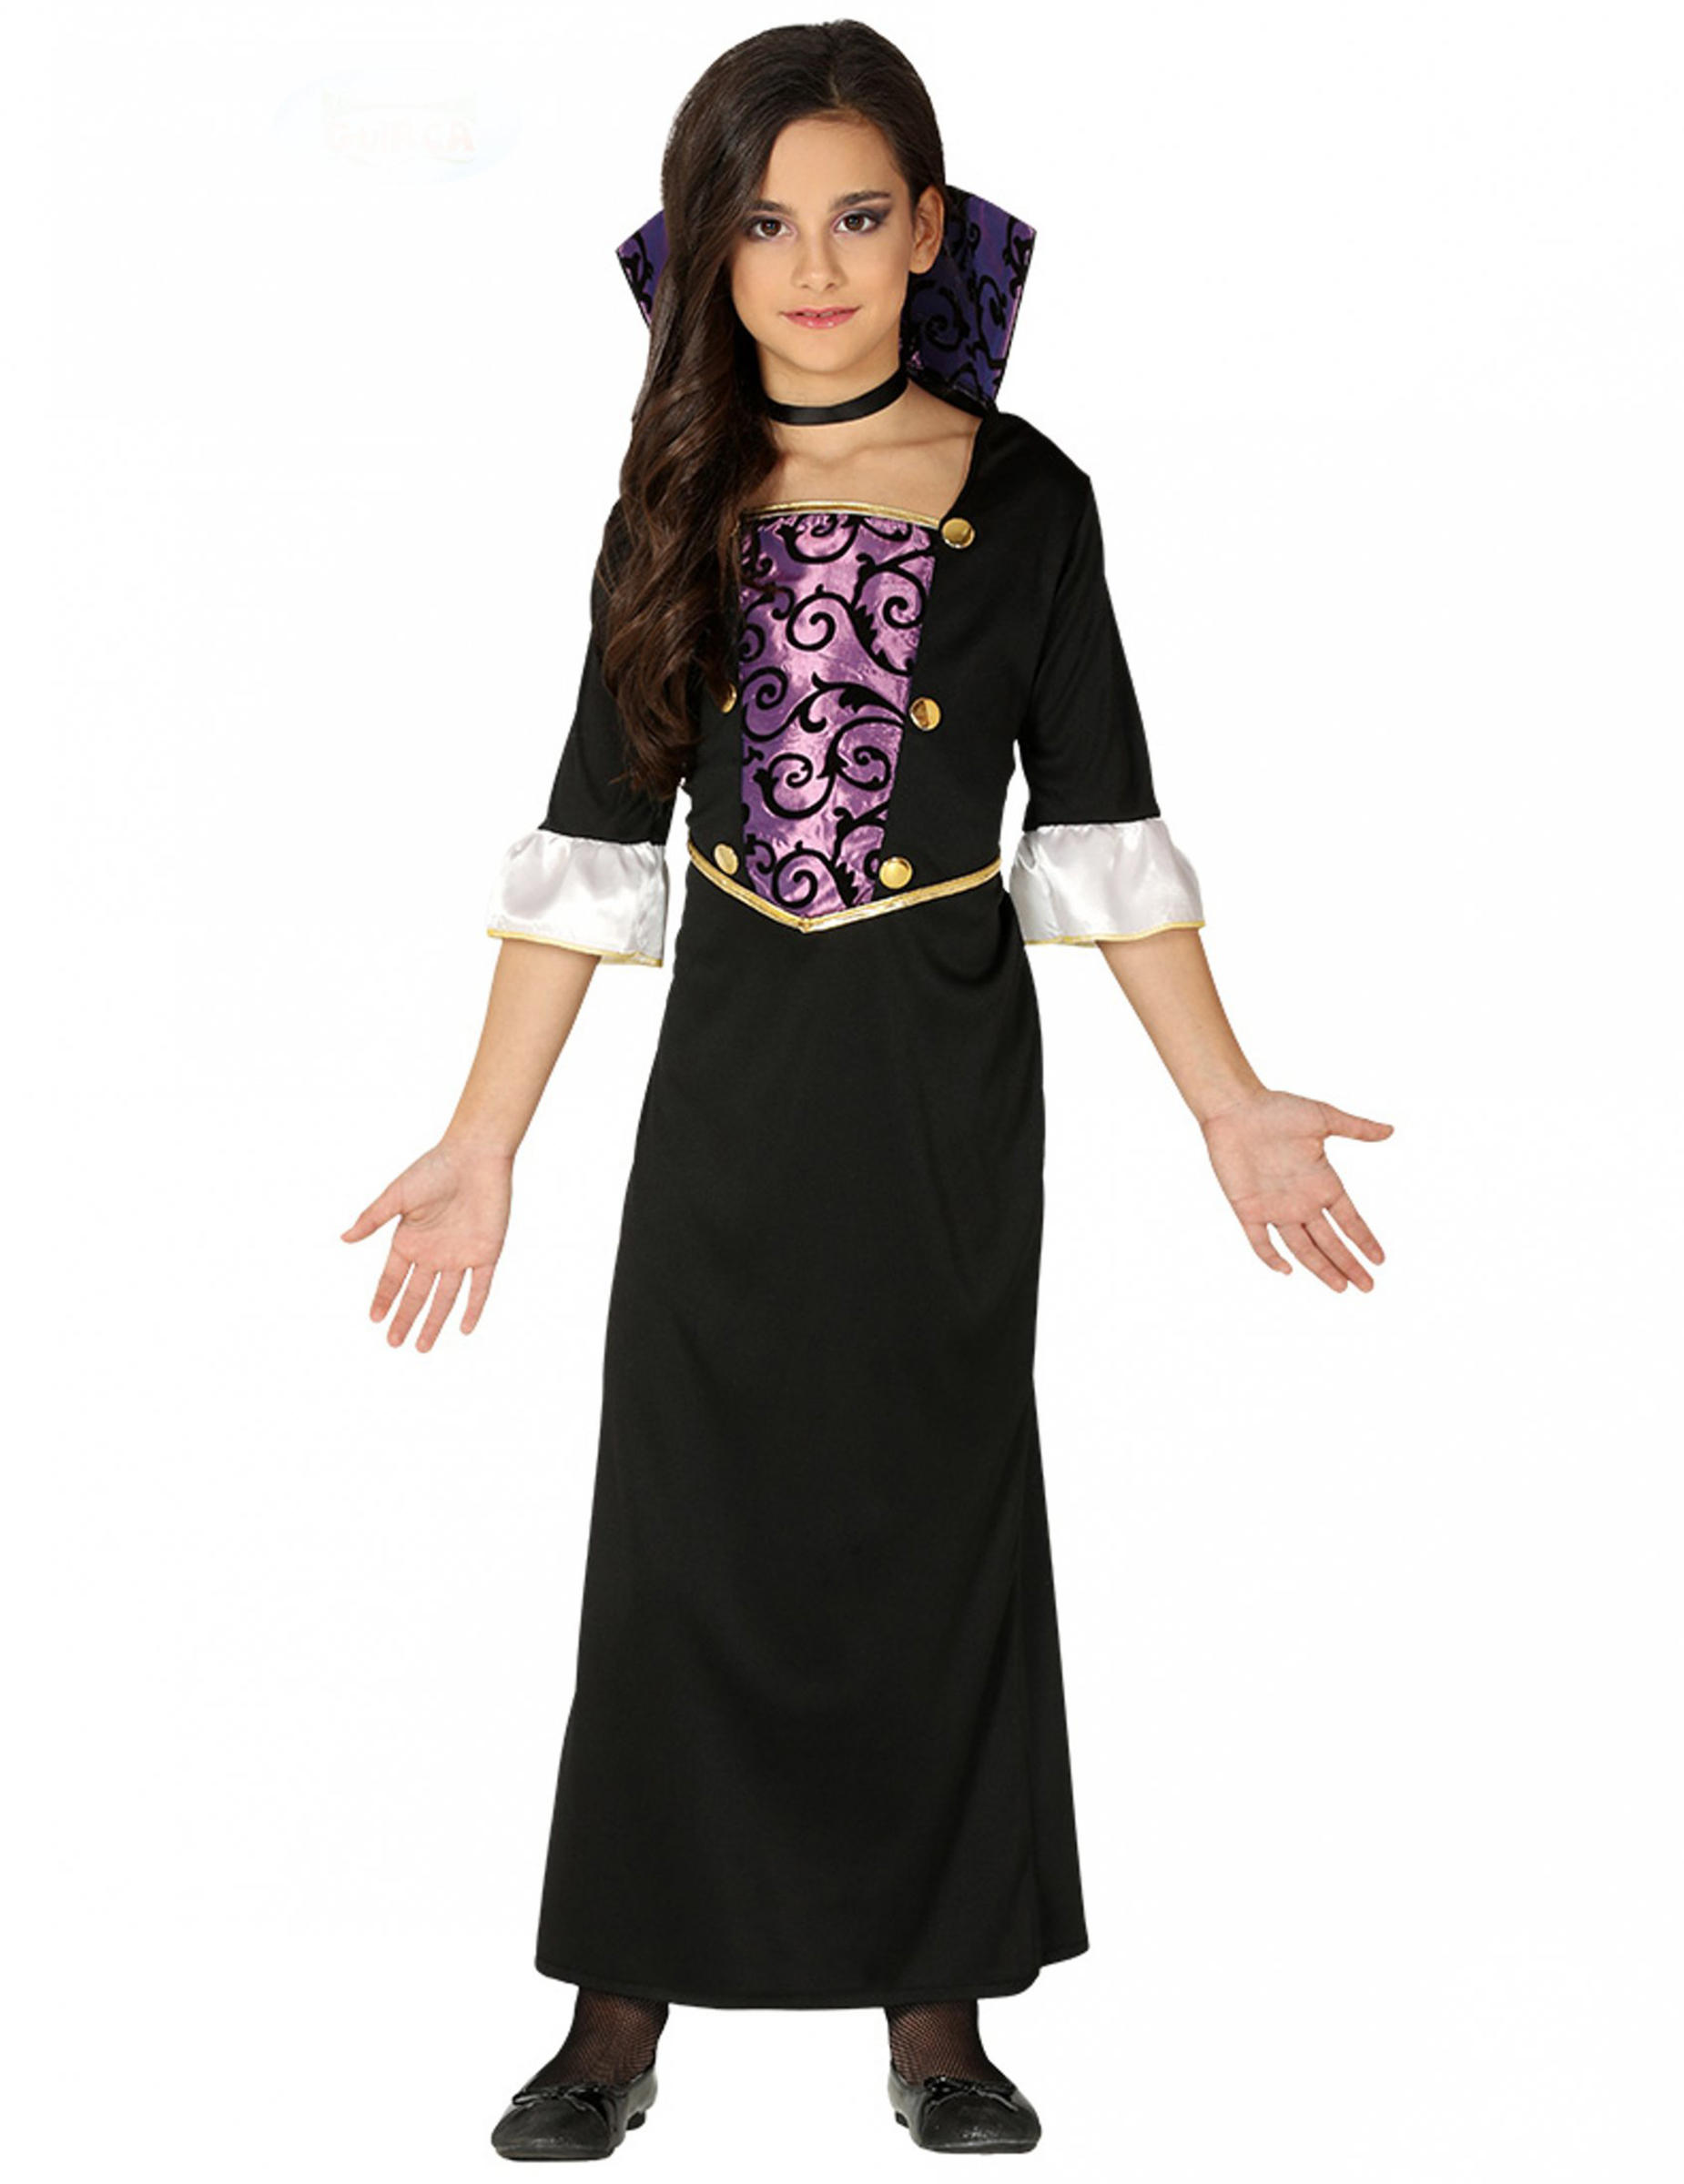 Schauriges Vampir-Kostüm für Mädchen Halloweenkostüm schwarz-lila von FIESTAS GUIRCA, S.L.